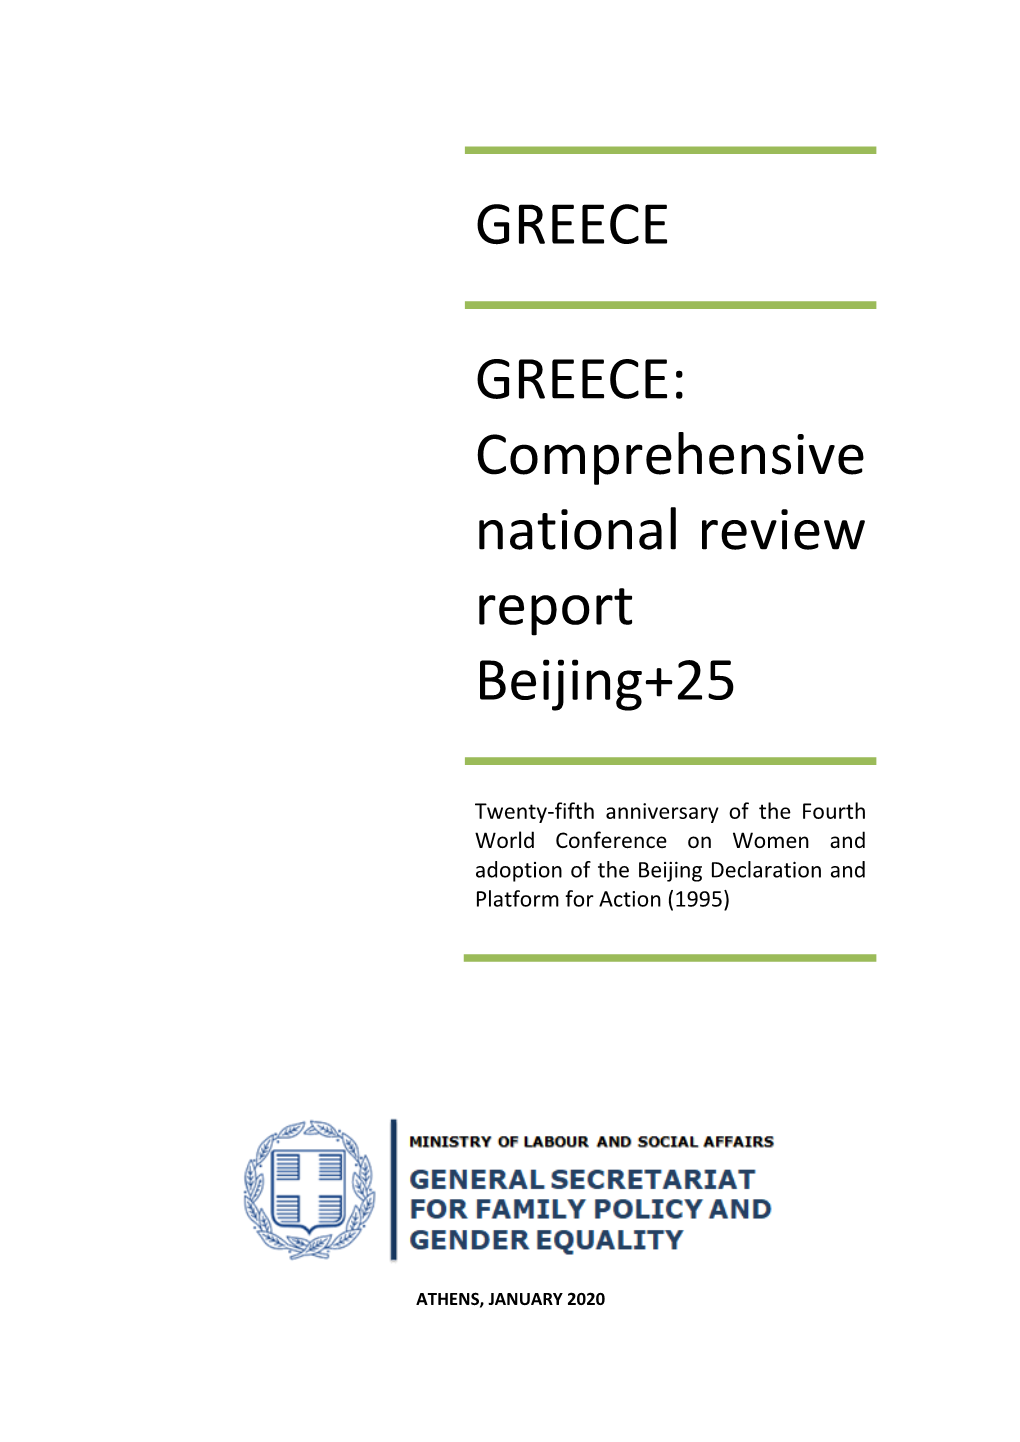 GREECE GREECE: Comprehensive National Review Report Beijing+25